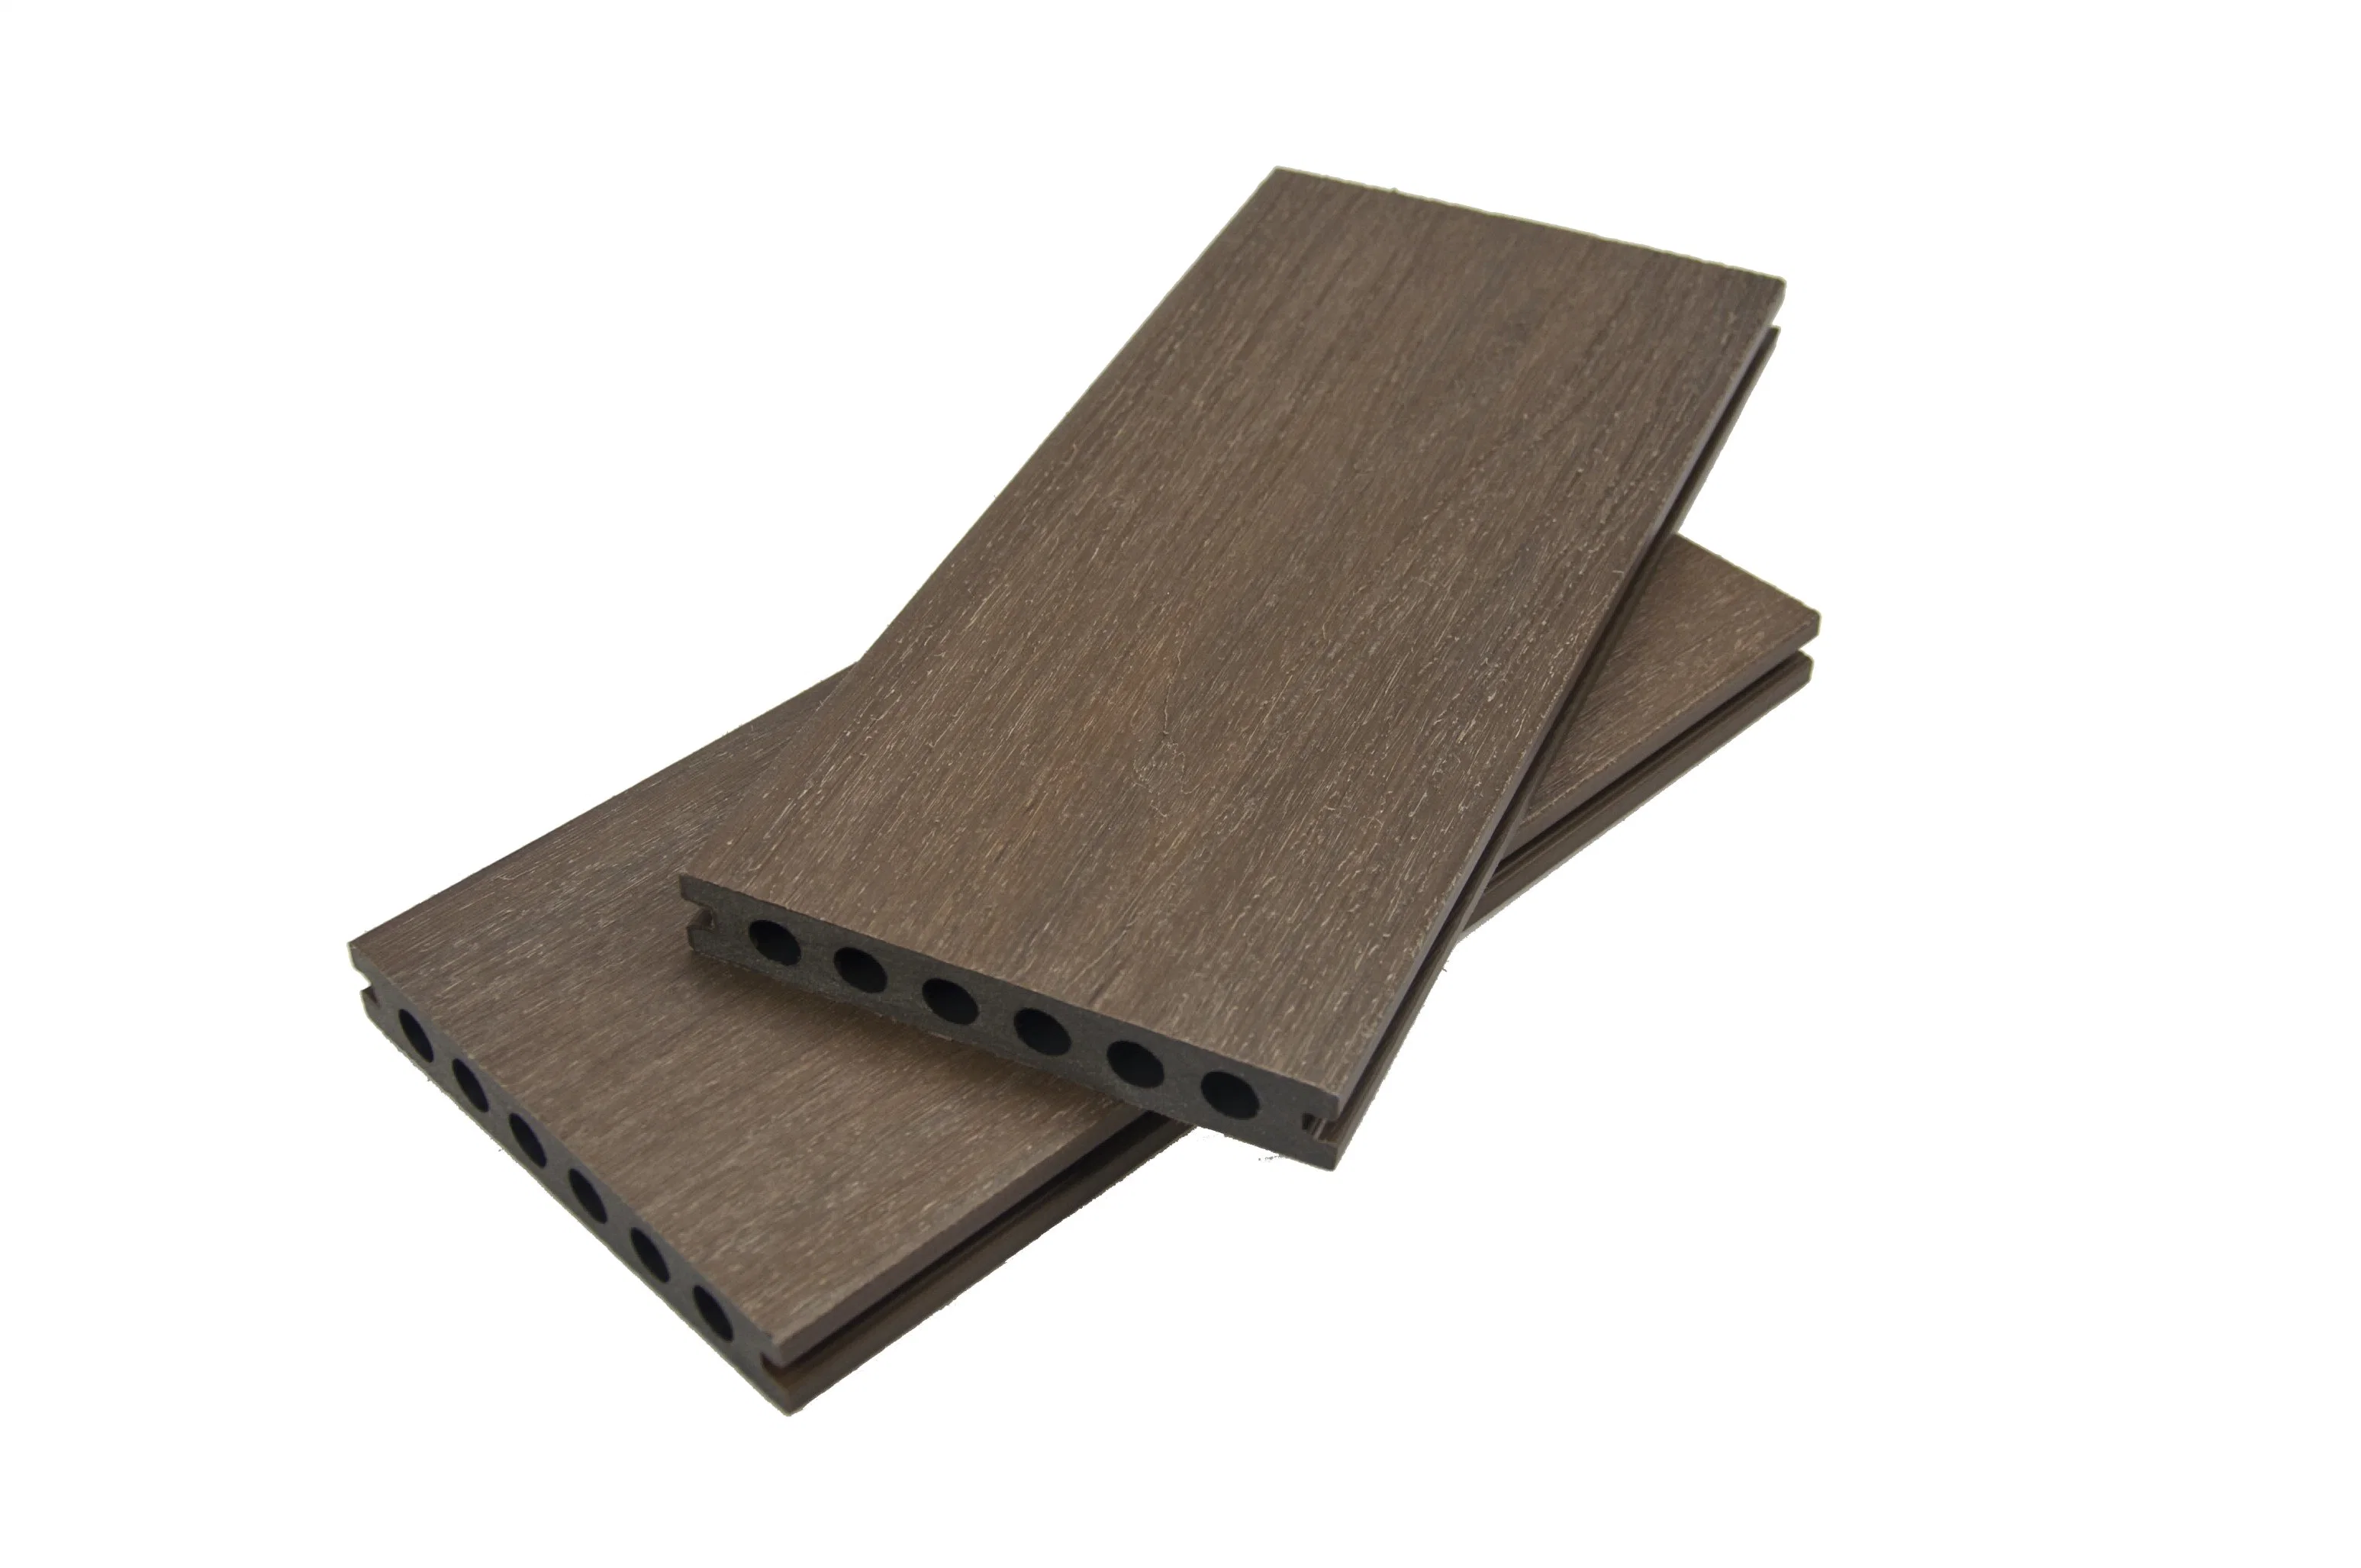 Hueco de alta calidad diseñado Untrashield laminado de plástico de madera compuesto de WPC Cubriendo el suelo de distintos colores en ambos lados